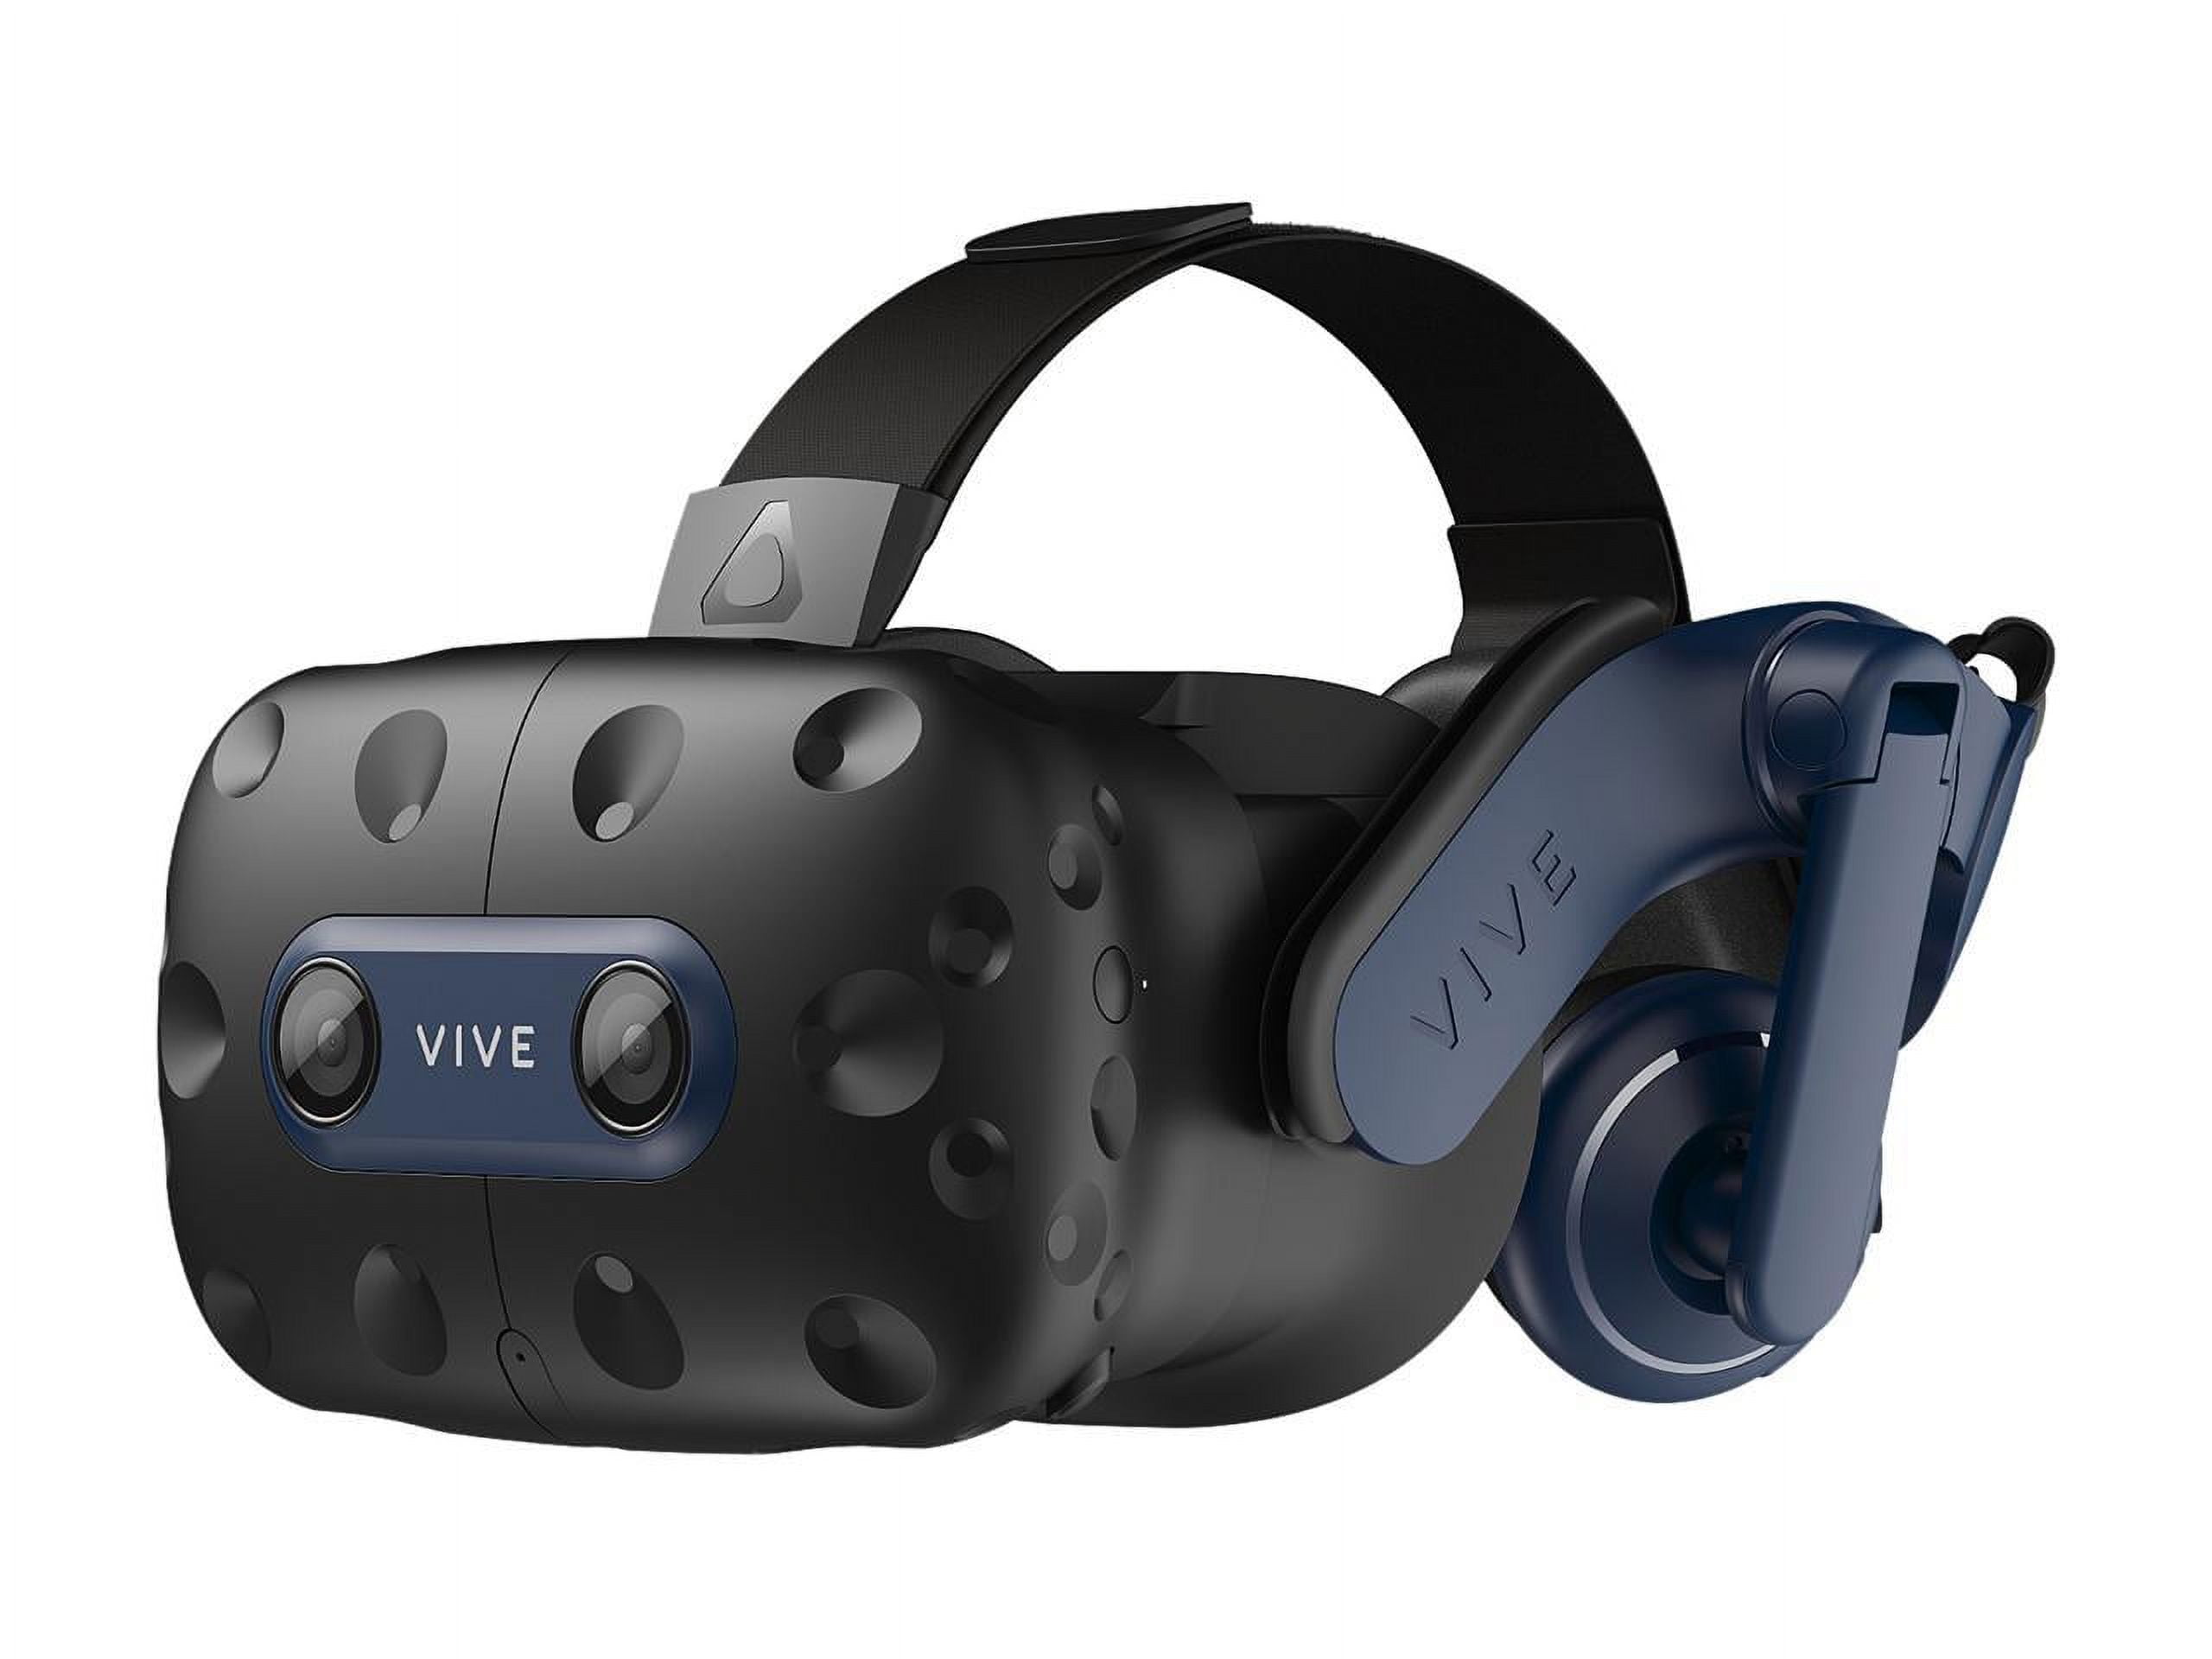 Olixar Black VR Headset Display Holder - For HTC Vive Pro 2